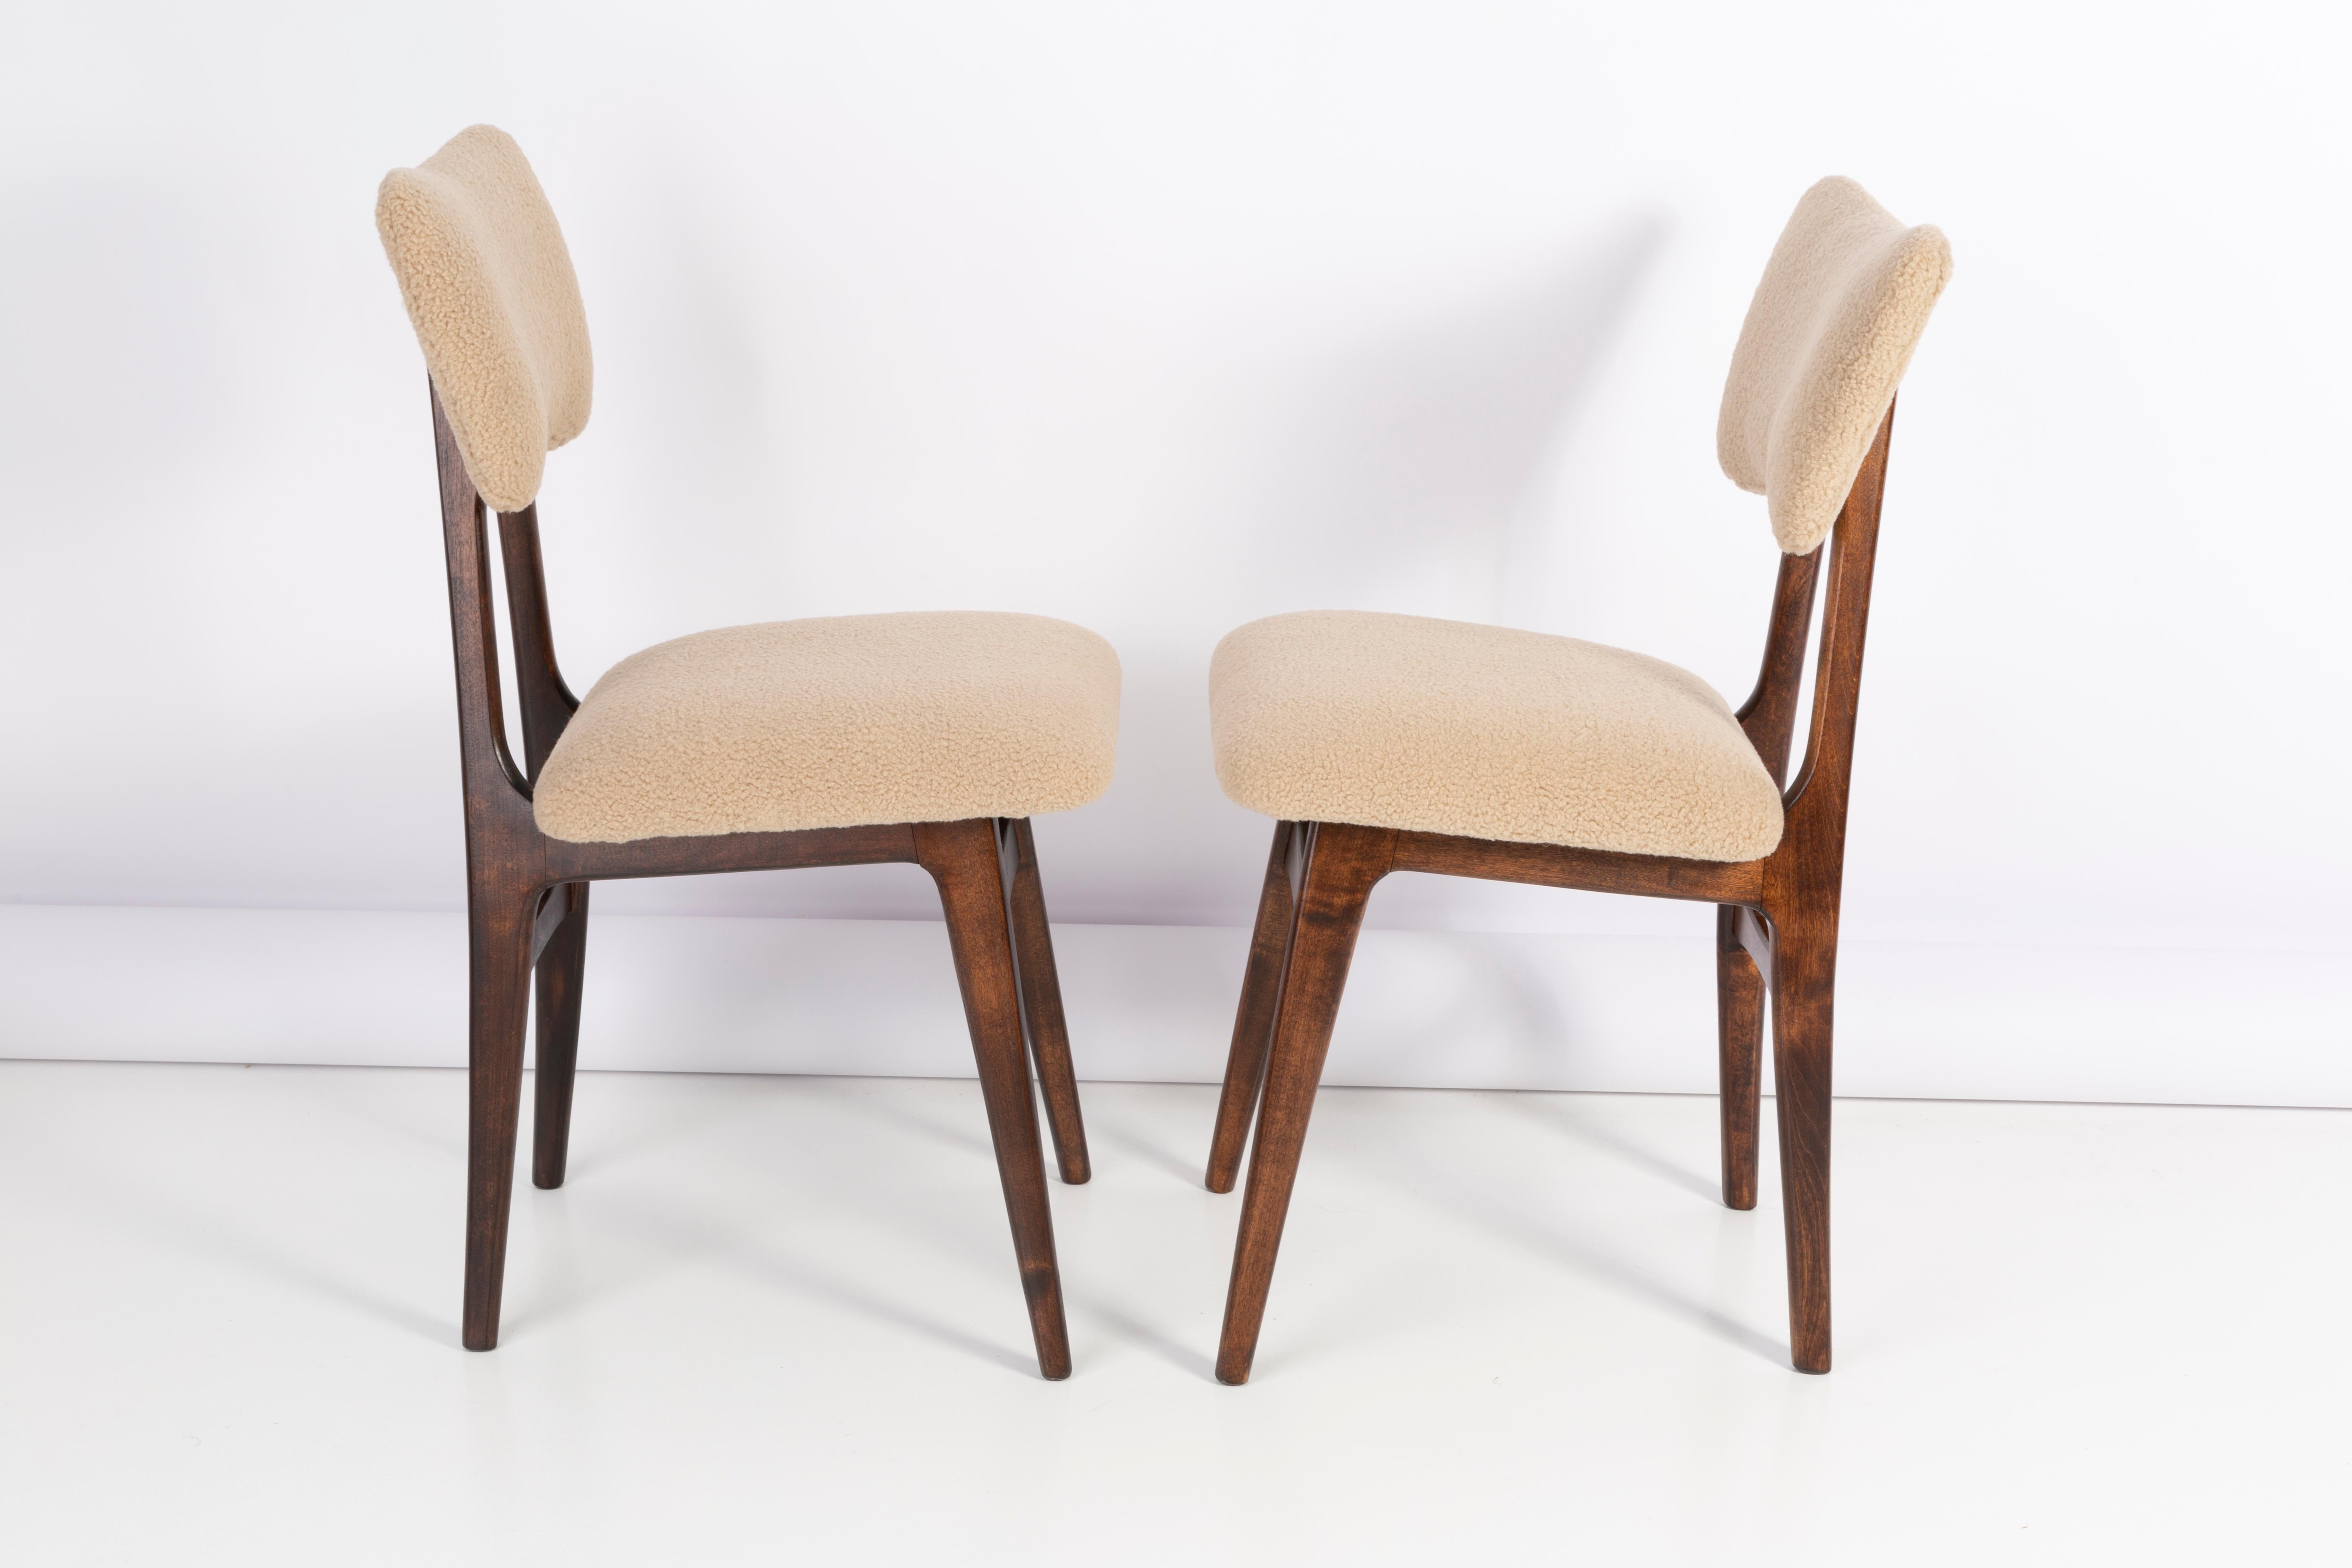 Chaises conçues par le professeur Rajmund Halas. Fabriqué en bois de hêtre. Les chaises ont été entièrement rénovées et les boiseries ont été rafraîchies. L'assise et le dossier sont habillés d'un tissu bouclé camel, durable et agréable au toucher.